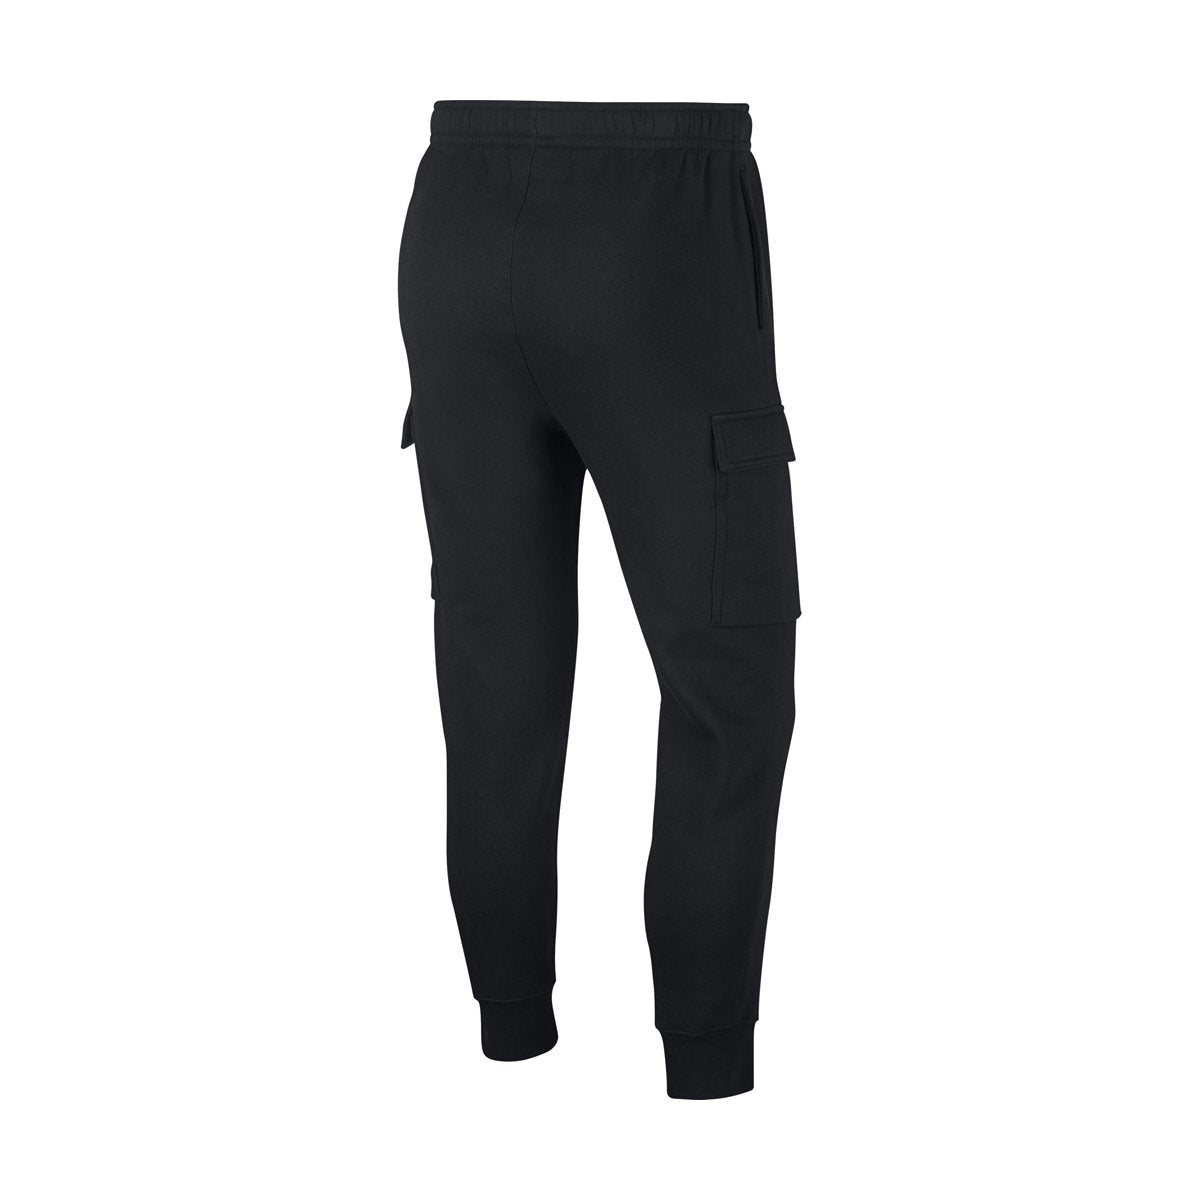 Nike Sportswear Club Fleece Men's Cargo Pants